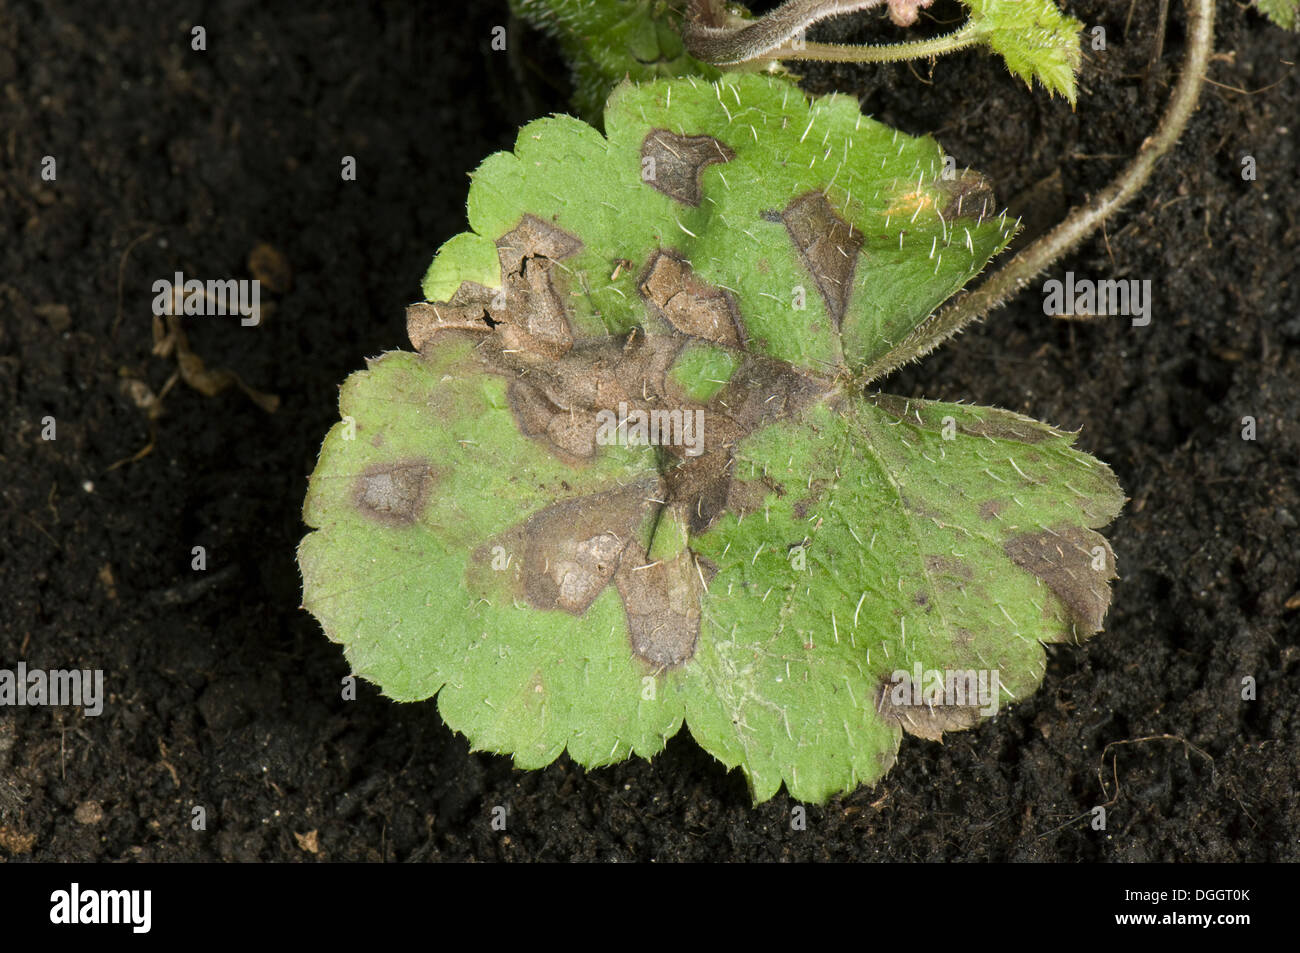 Nématode foliaire, Aphelenchoides spp., angulaire sur l'apparition de taches sur les feuilles les feuilles de l'anémone d'ornement Banque D'Images